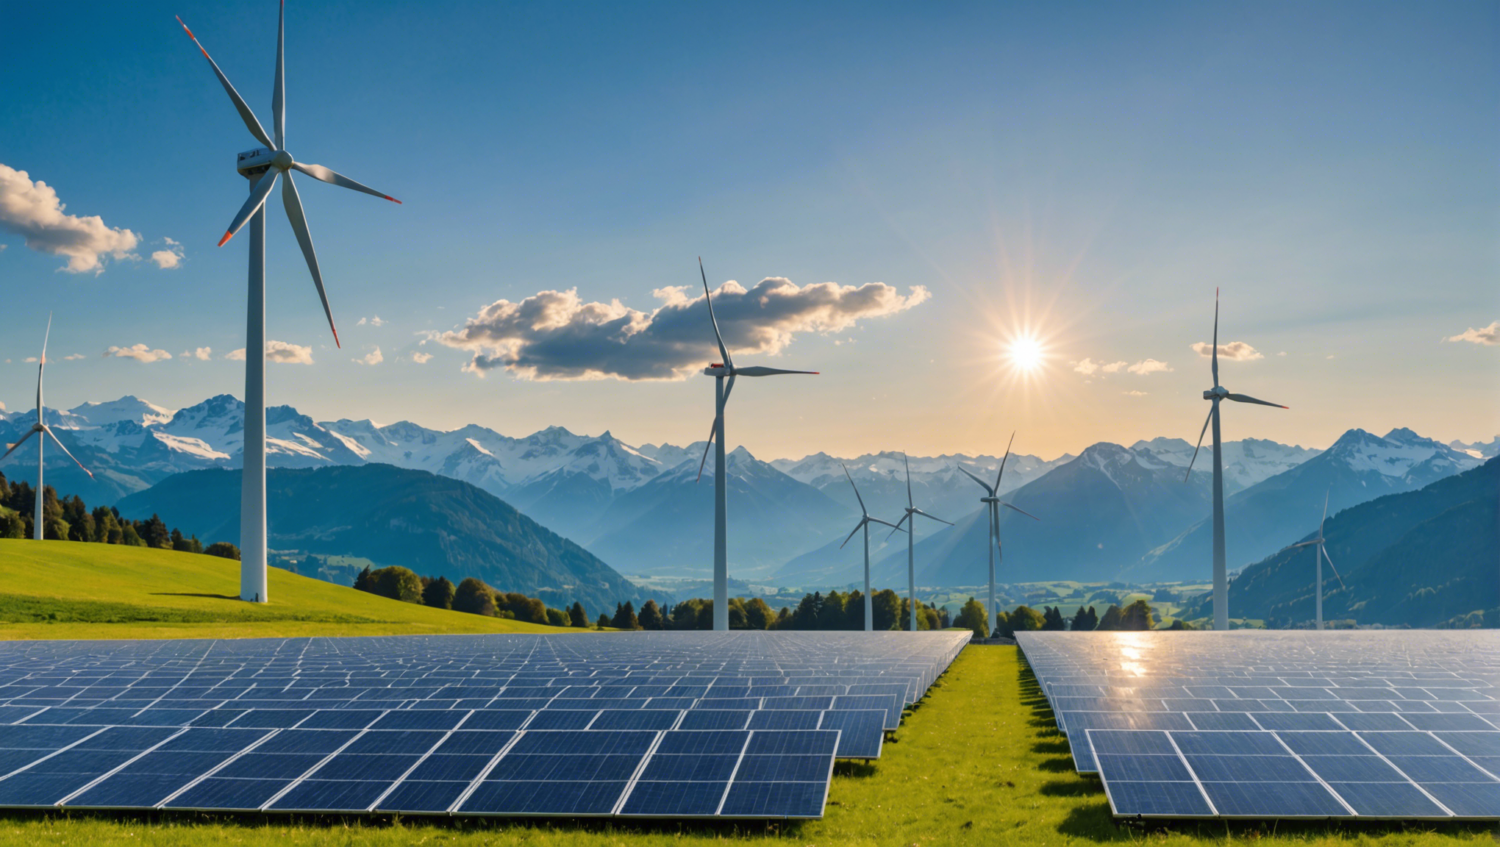 découvrez les raisons pour lesquelles la suisse peine à se développer dans la production d'électricité solaire et éolienne. explorez les défis et les opportunités liés à cette transition énergétique.